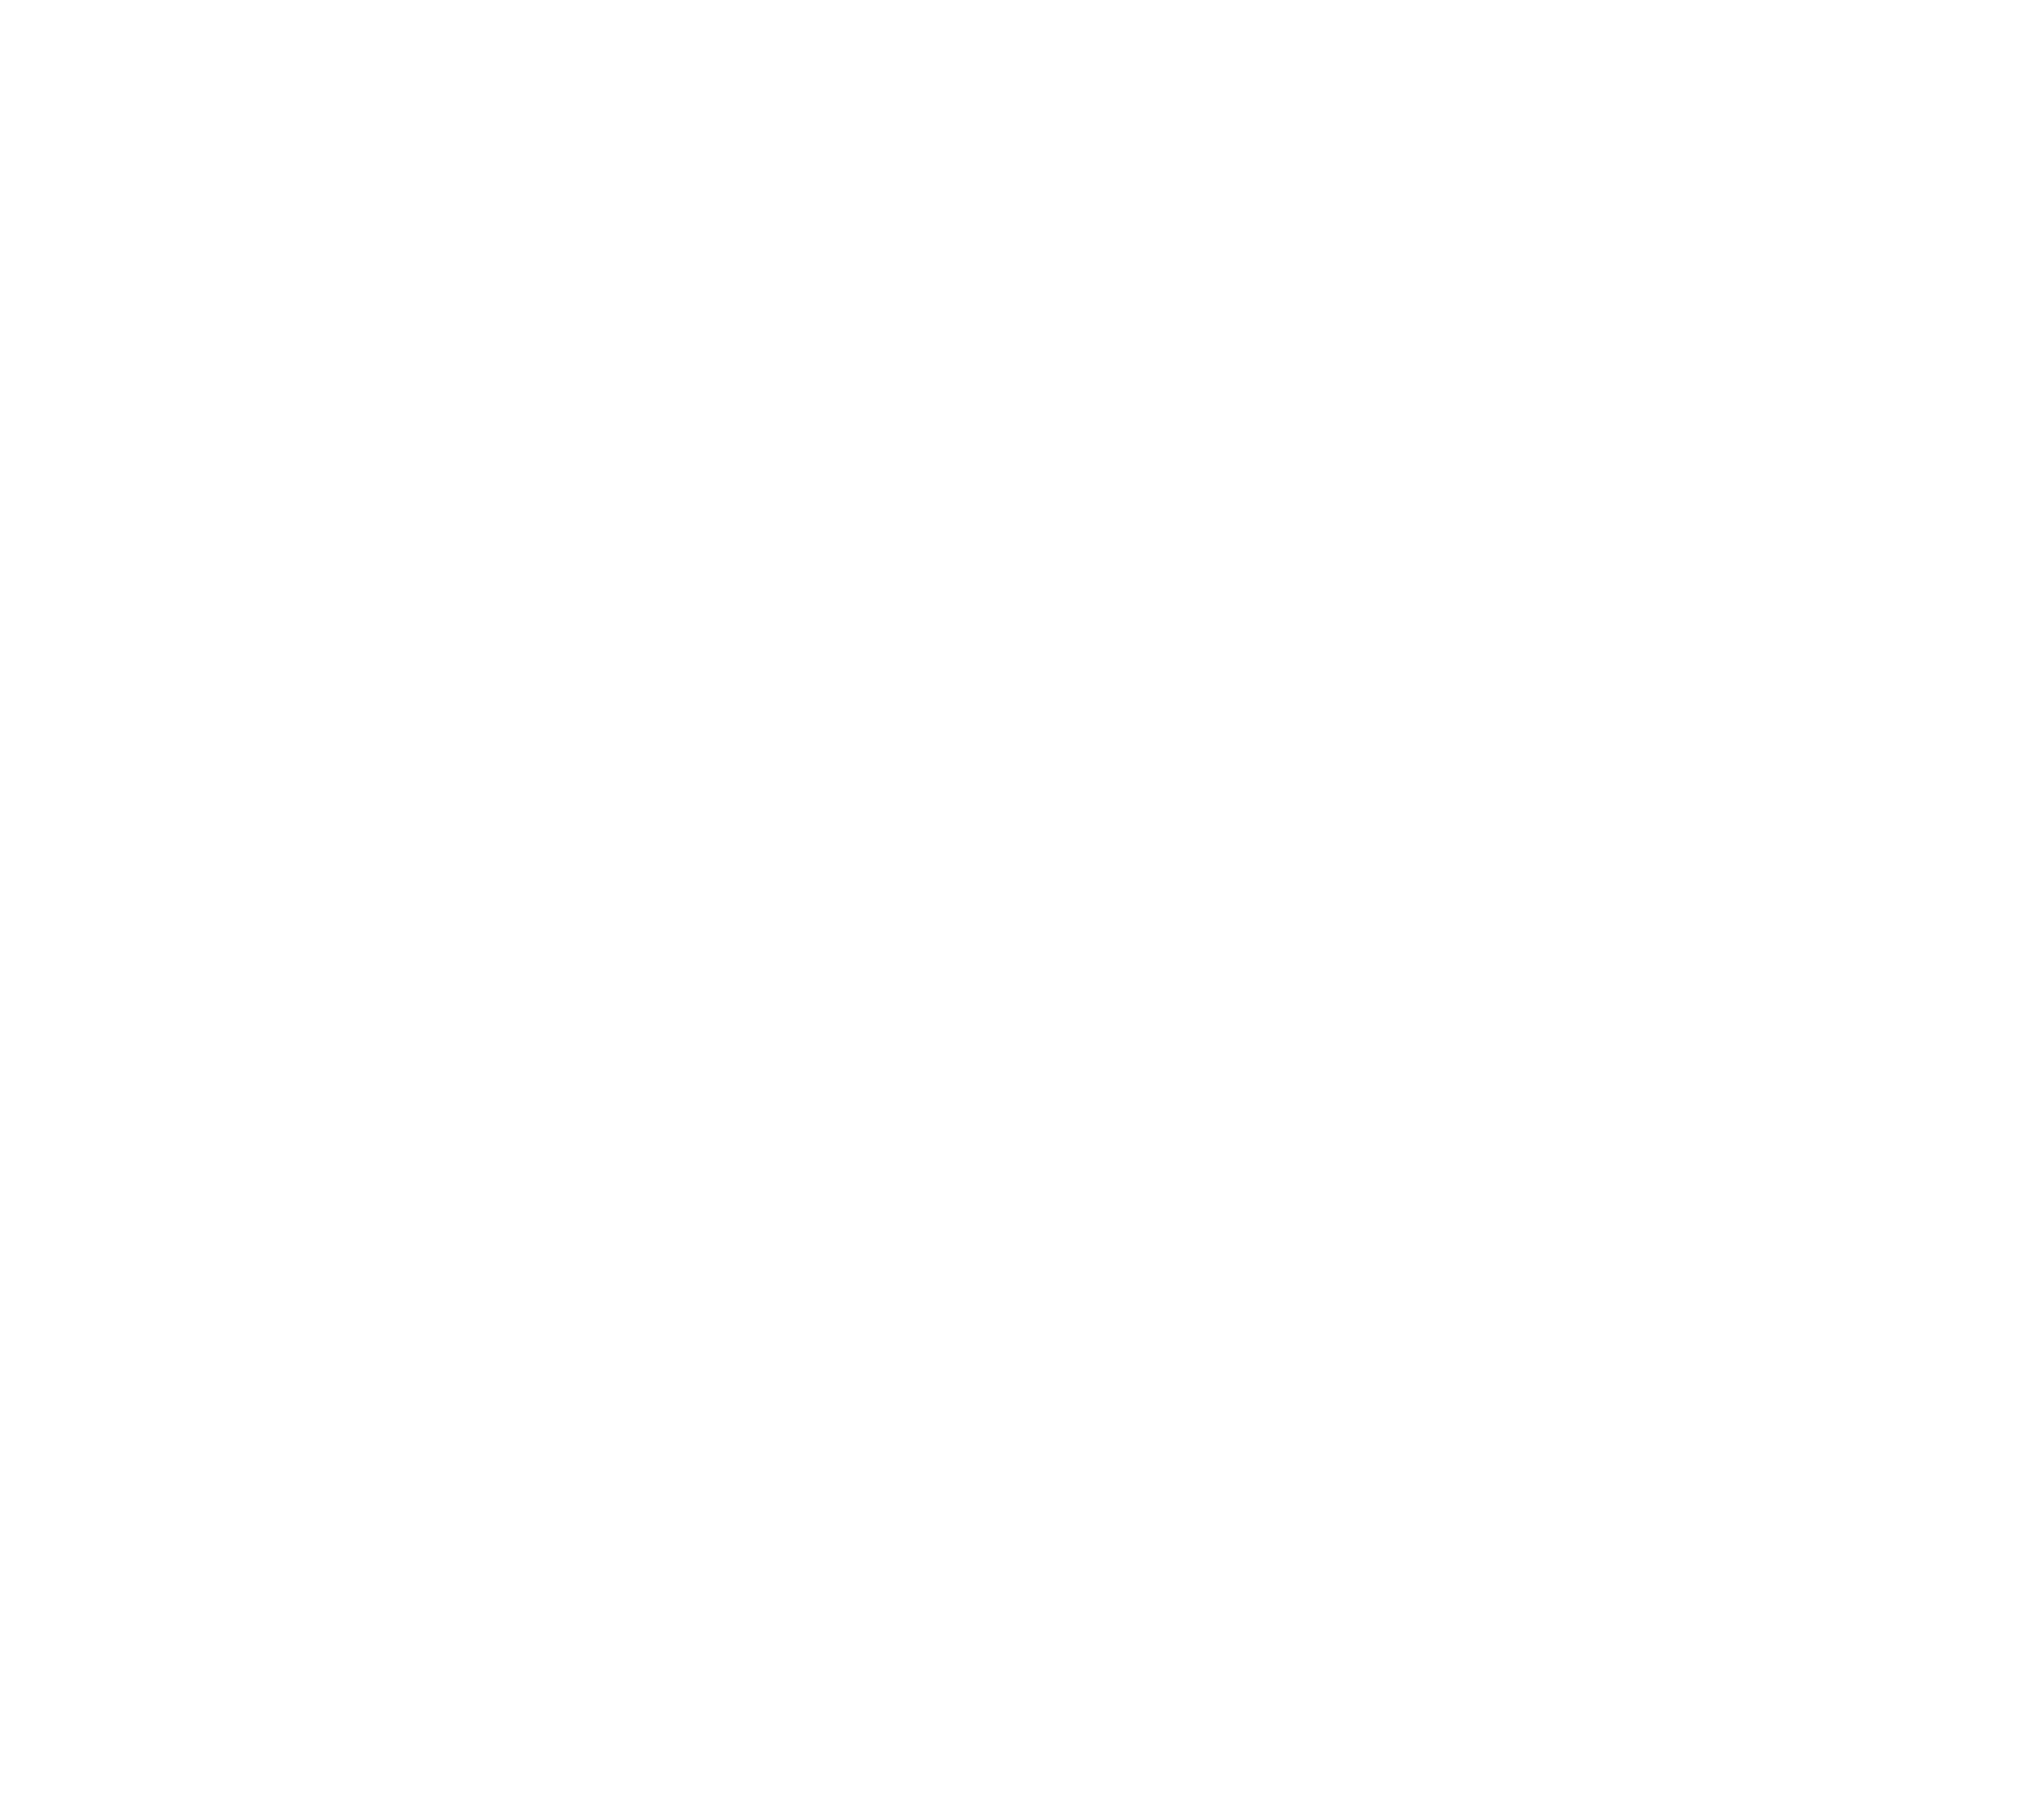 Lugh Light Center